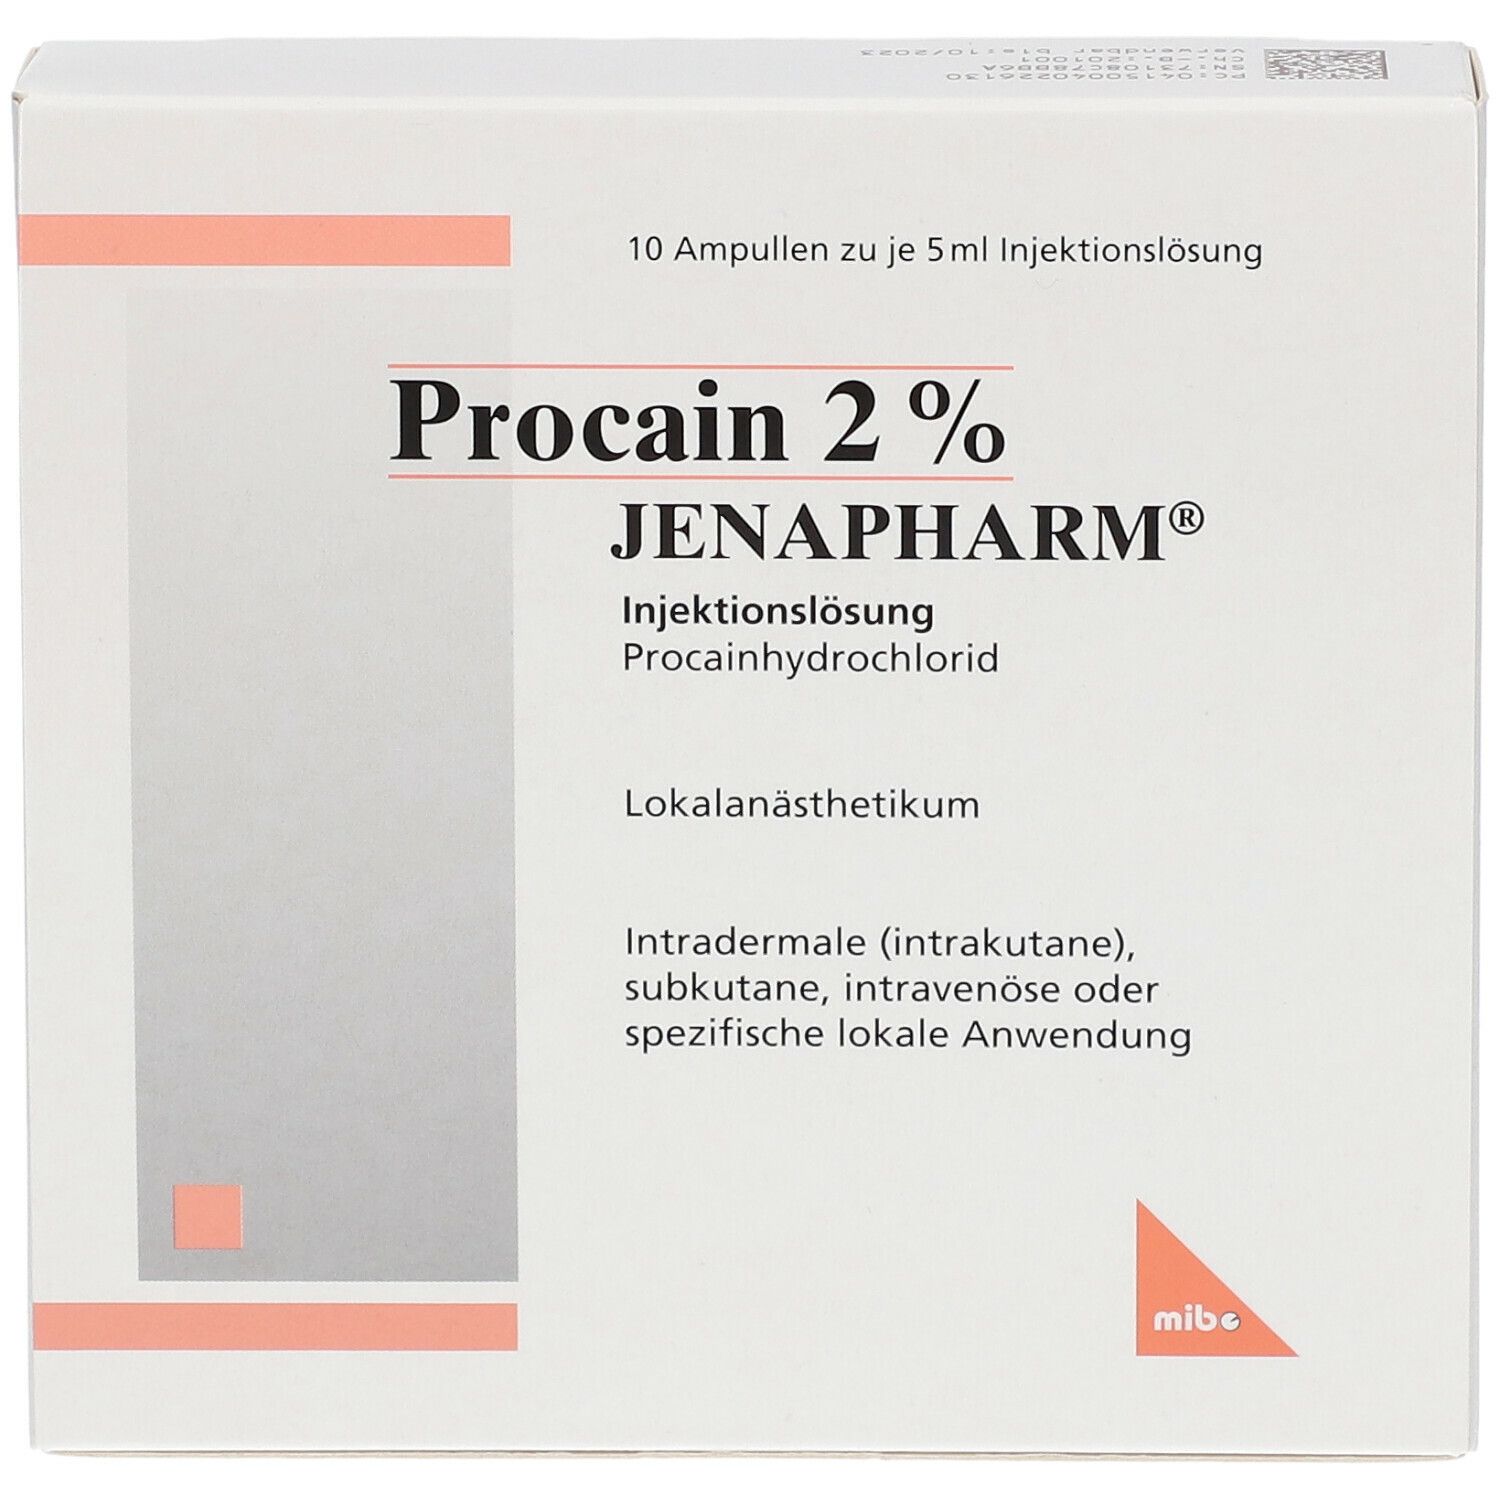 Procain 2% JENAPHARM®